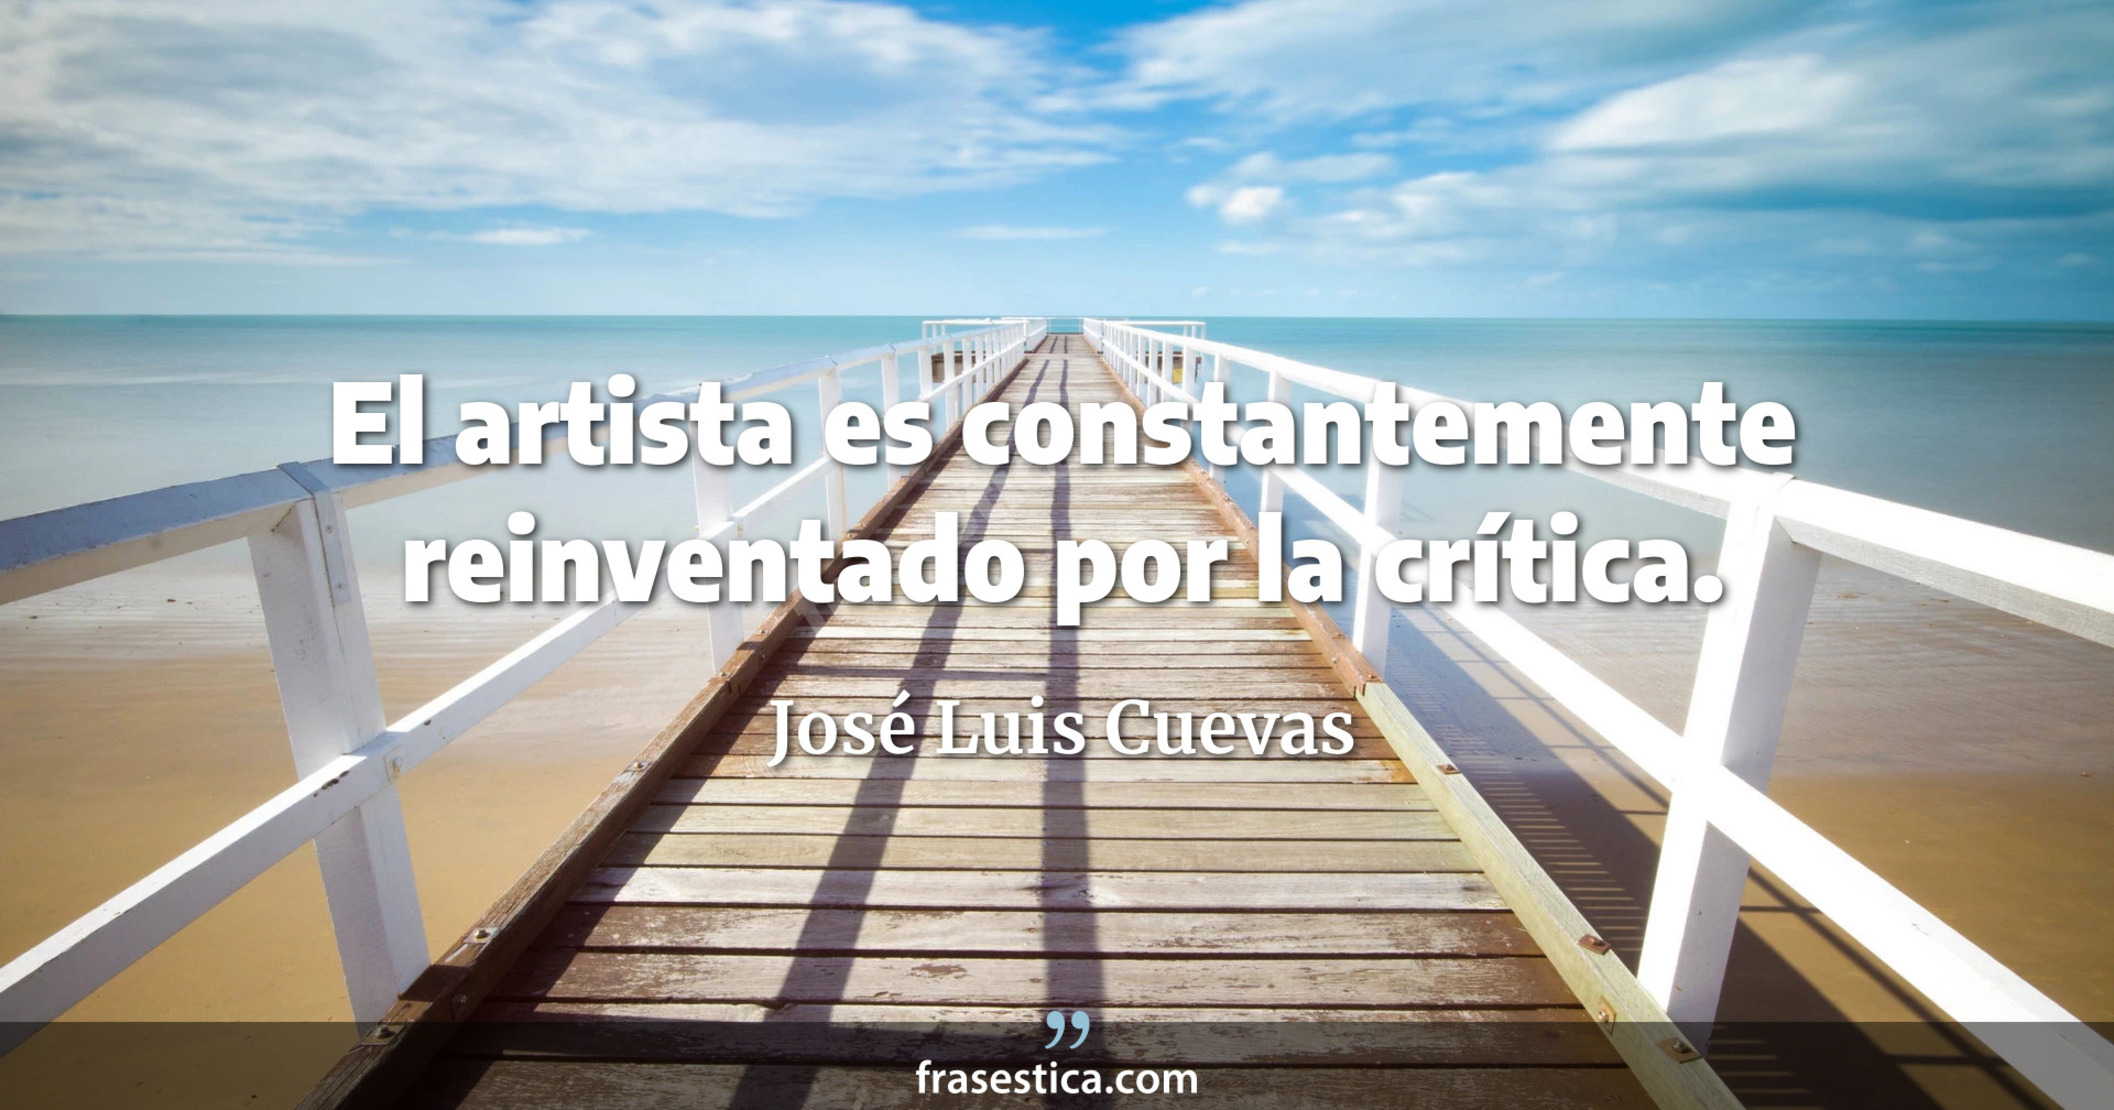 El artista es constantemente reinventado por la crítica. - José Luis Cuevas